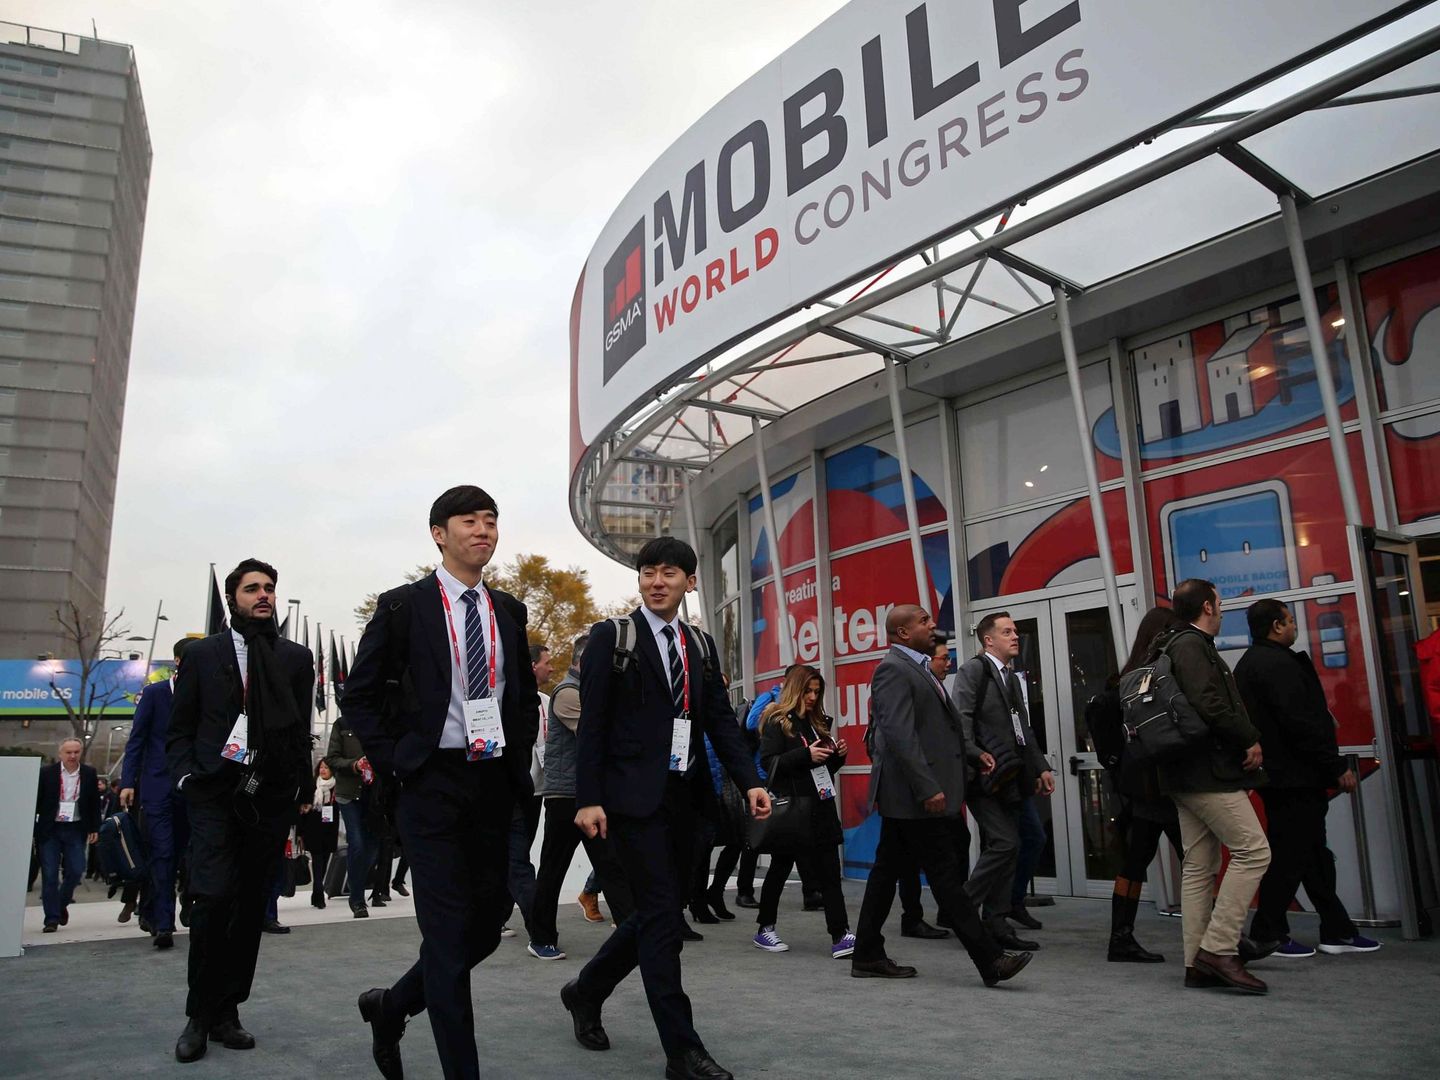 El Mobile World Congress 2018 ha reunido a 100.000 personas en Barcelona. (EFE)